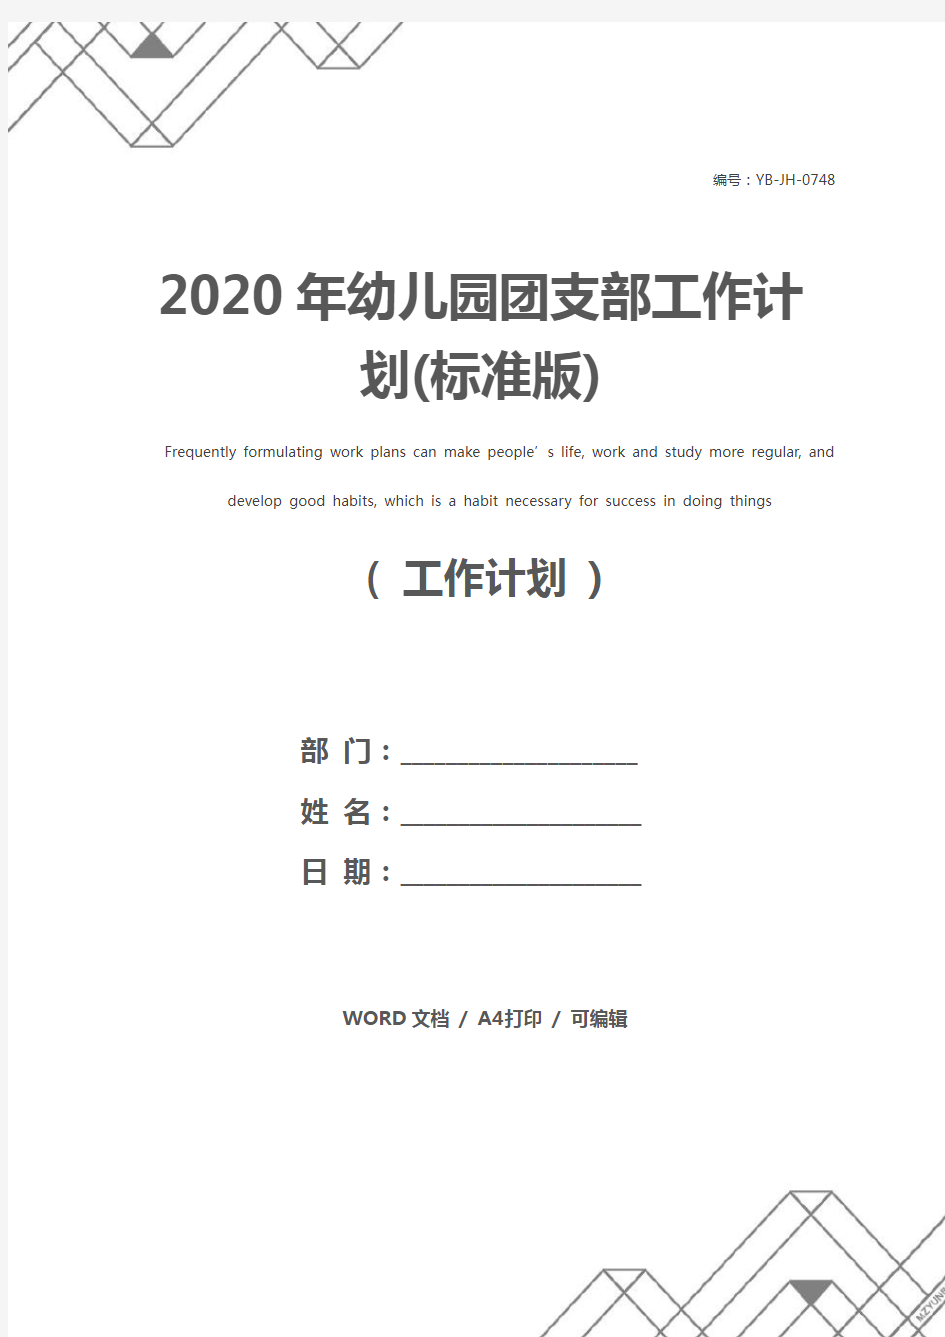 2020年幼儿园团支部工作计划(标准版)